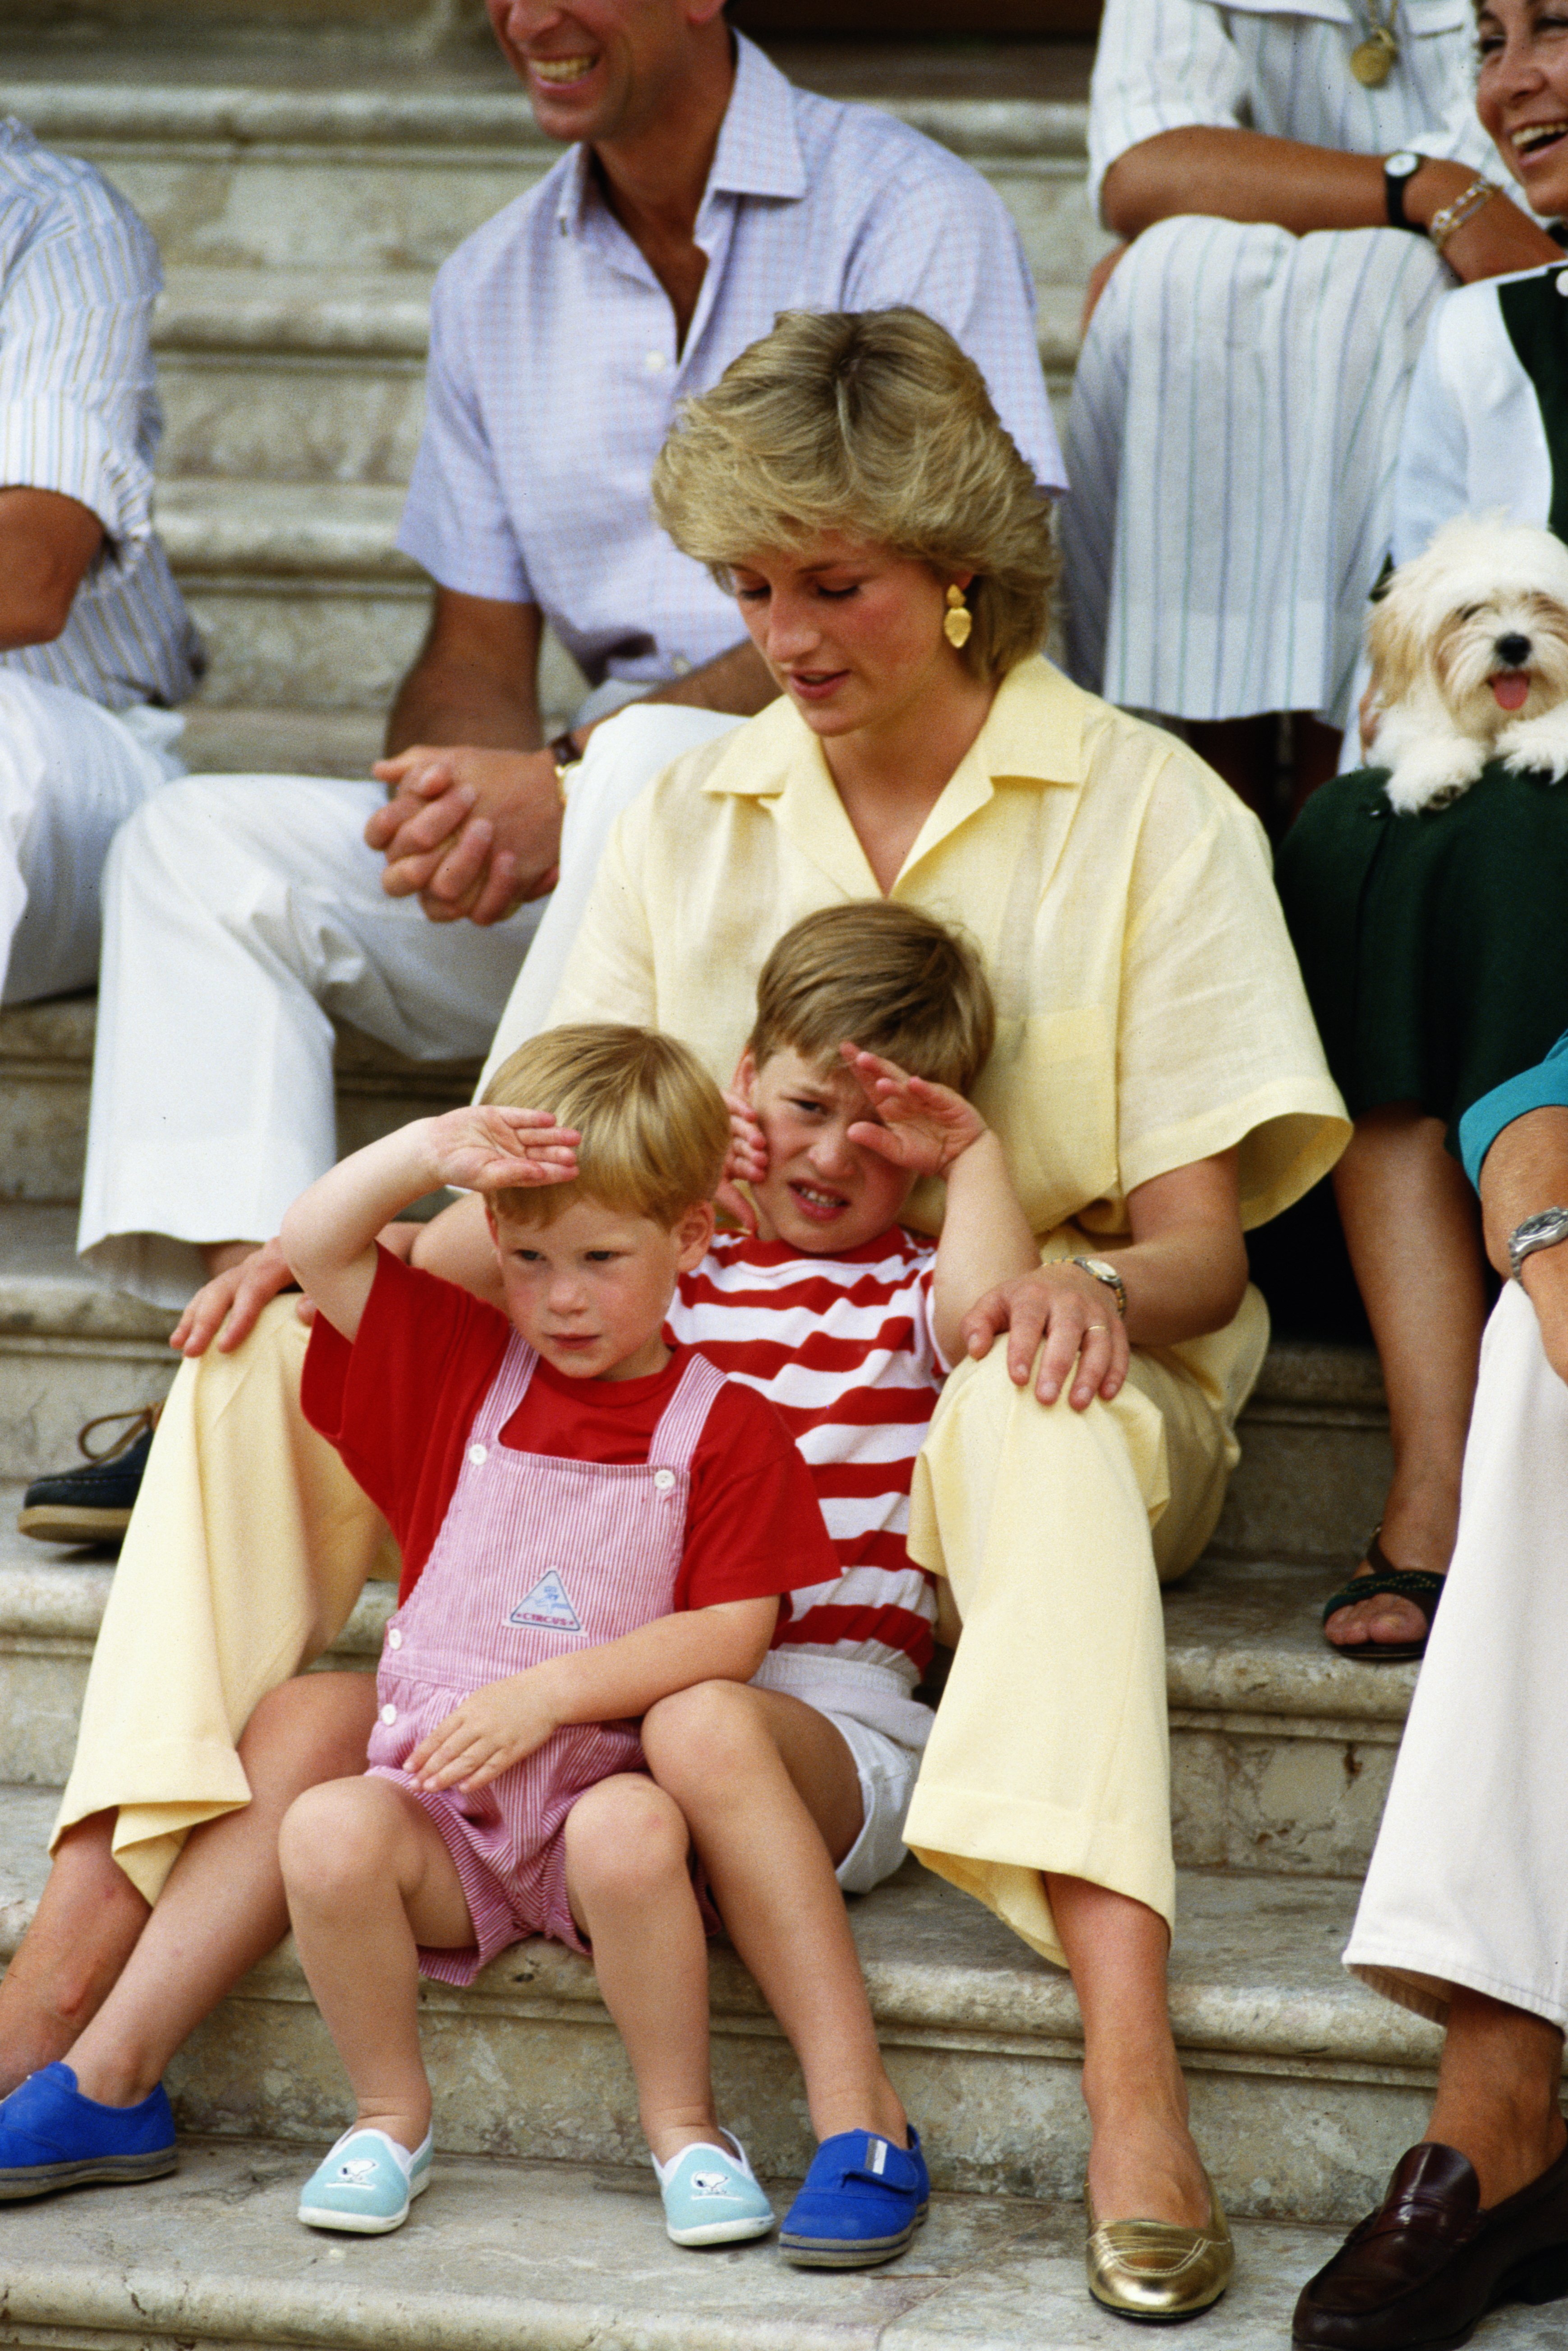 Diana, Princesa de Gales, fotografiada con sus hijos, el Príncipe Harry y el Príncipe William, de vacaciones en el Palacio de Marivent en agosto de 1987 en Mallorca. | Foto: Getty Images